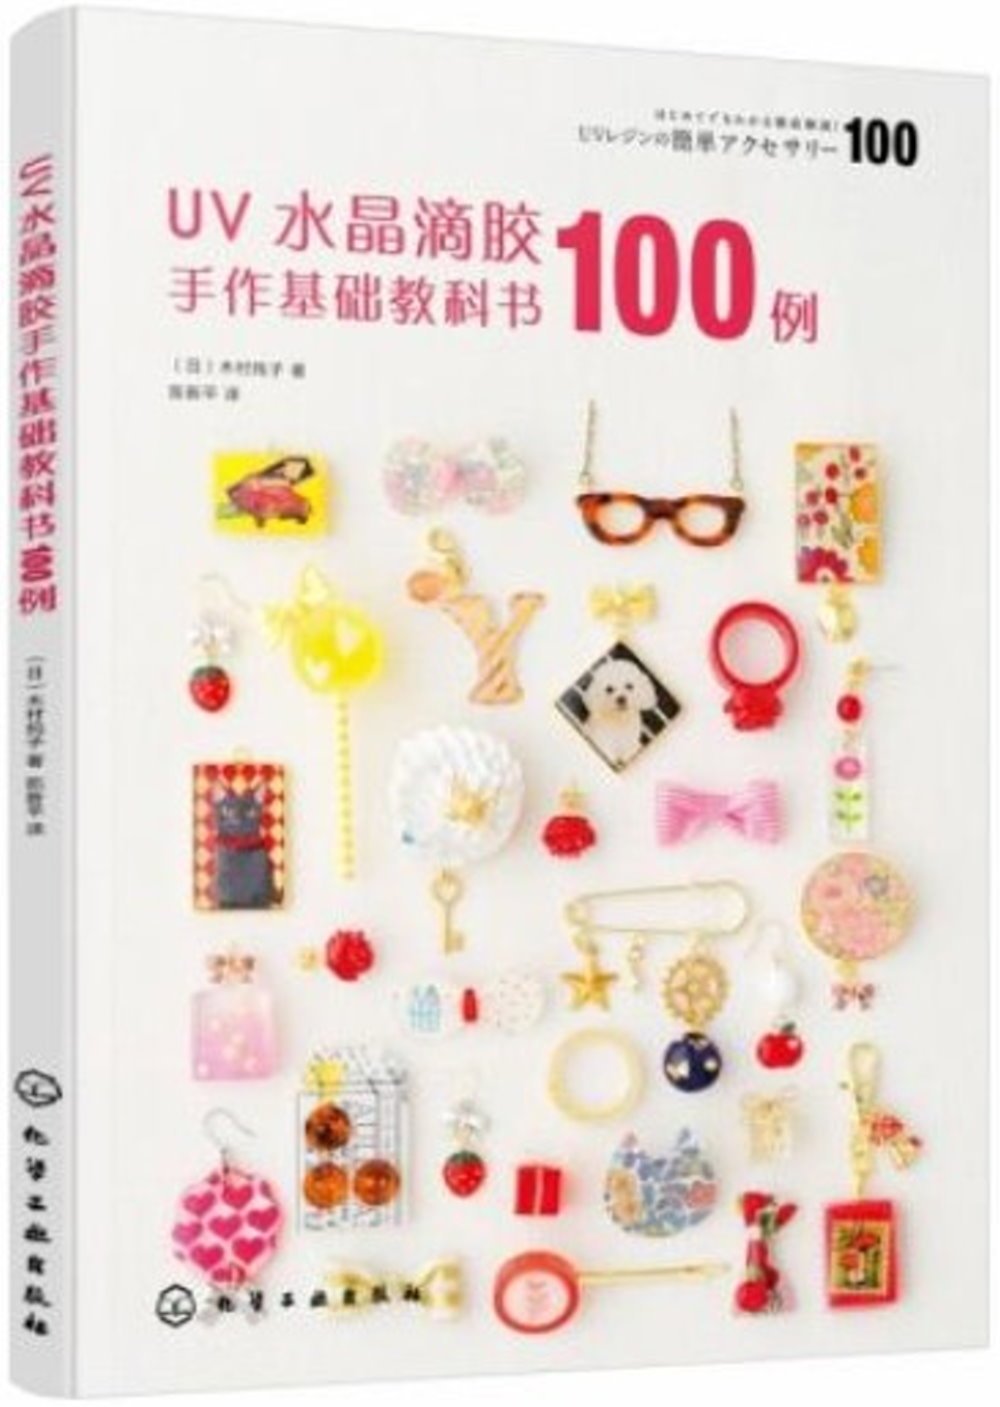 UV水晶滴膠手作基礎教科書100例